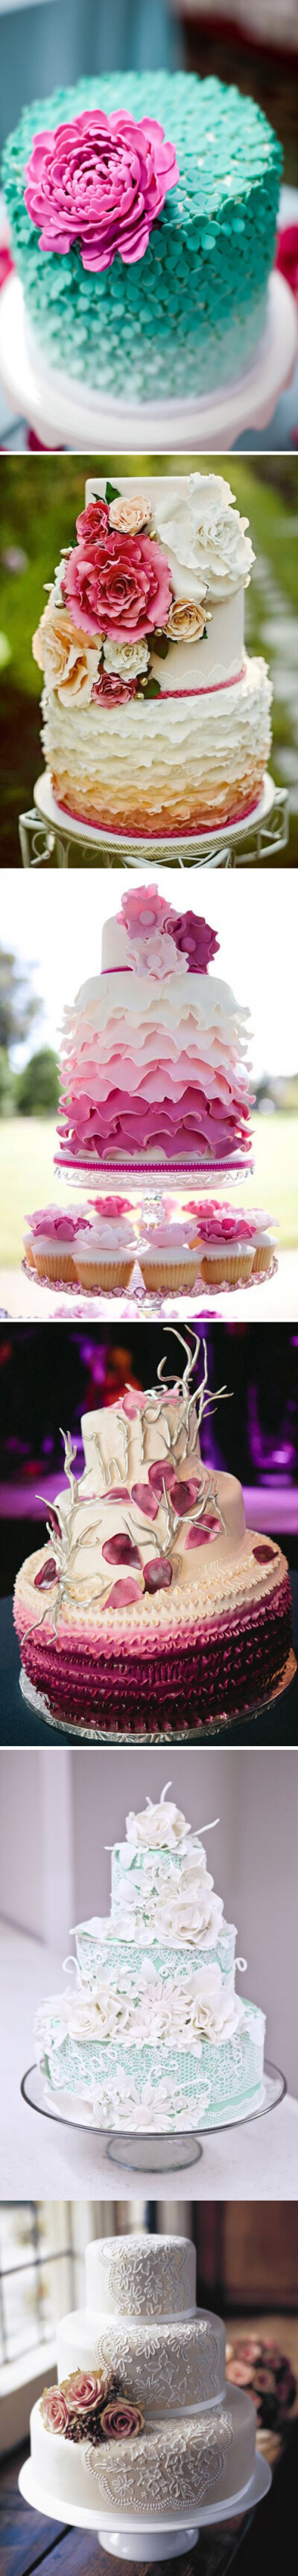 【婚礼布置】蛋糕